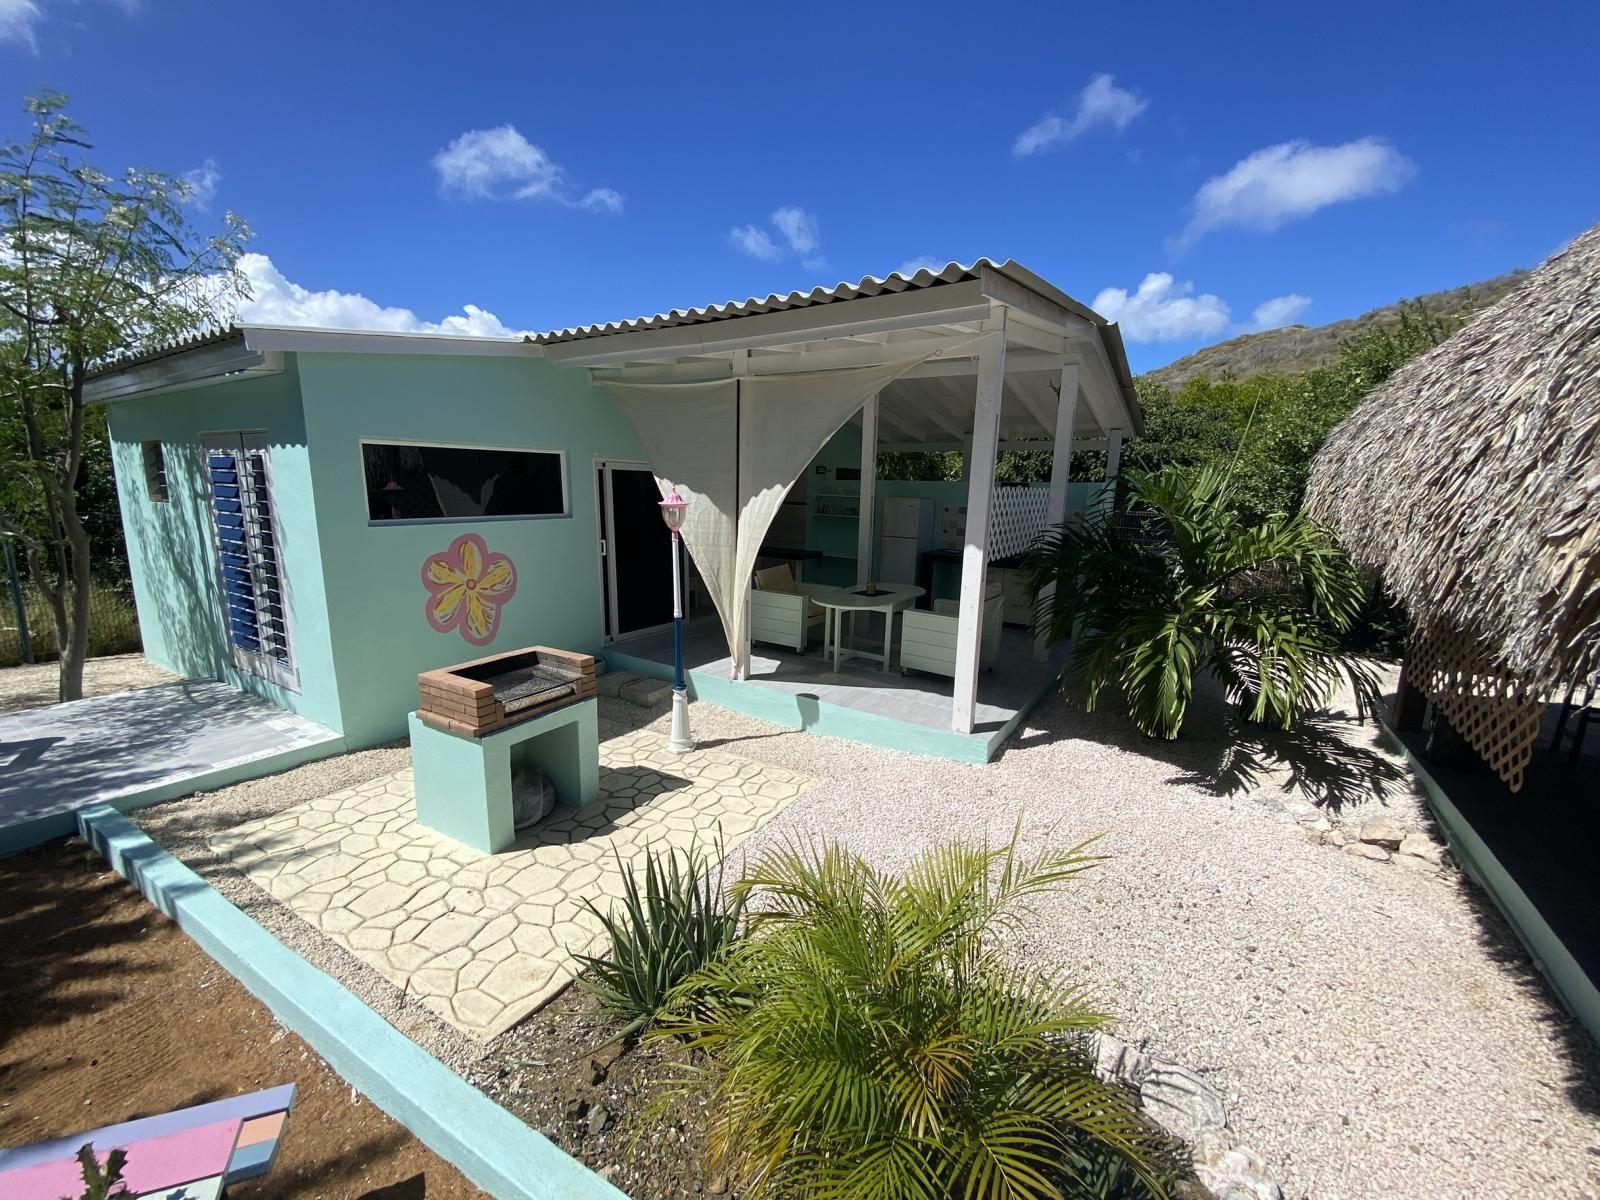 Ferienhaus in Curaçao mit Eigenem Grill  in Mittelamerika und Karibik